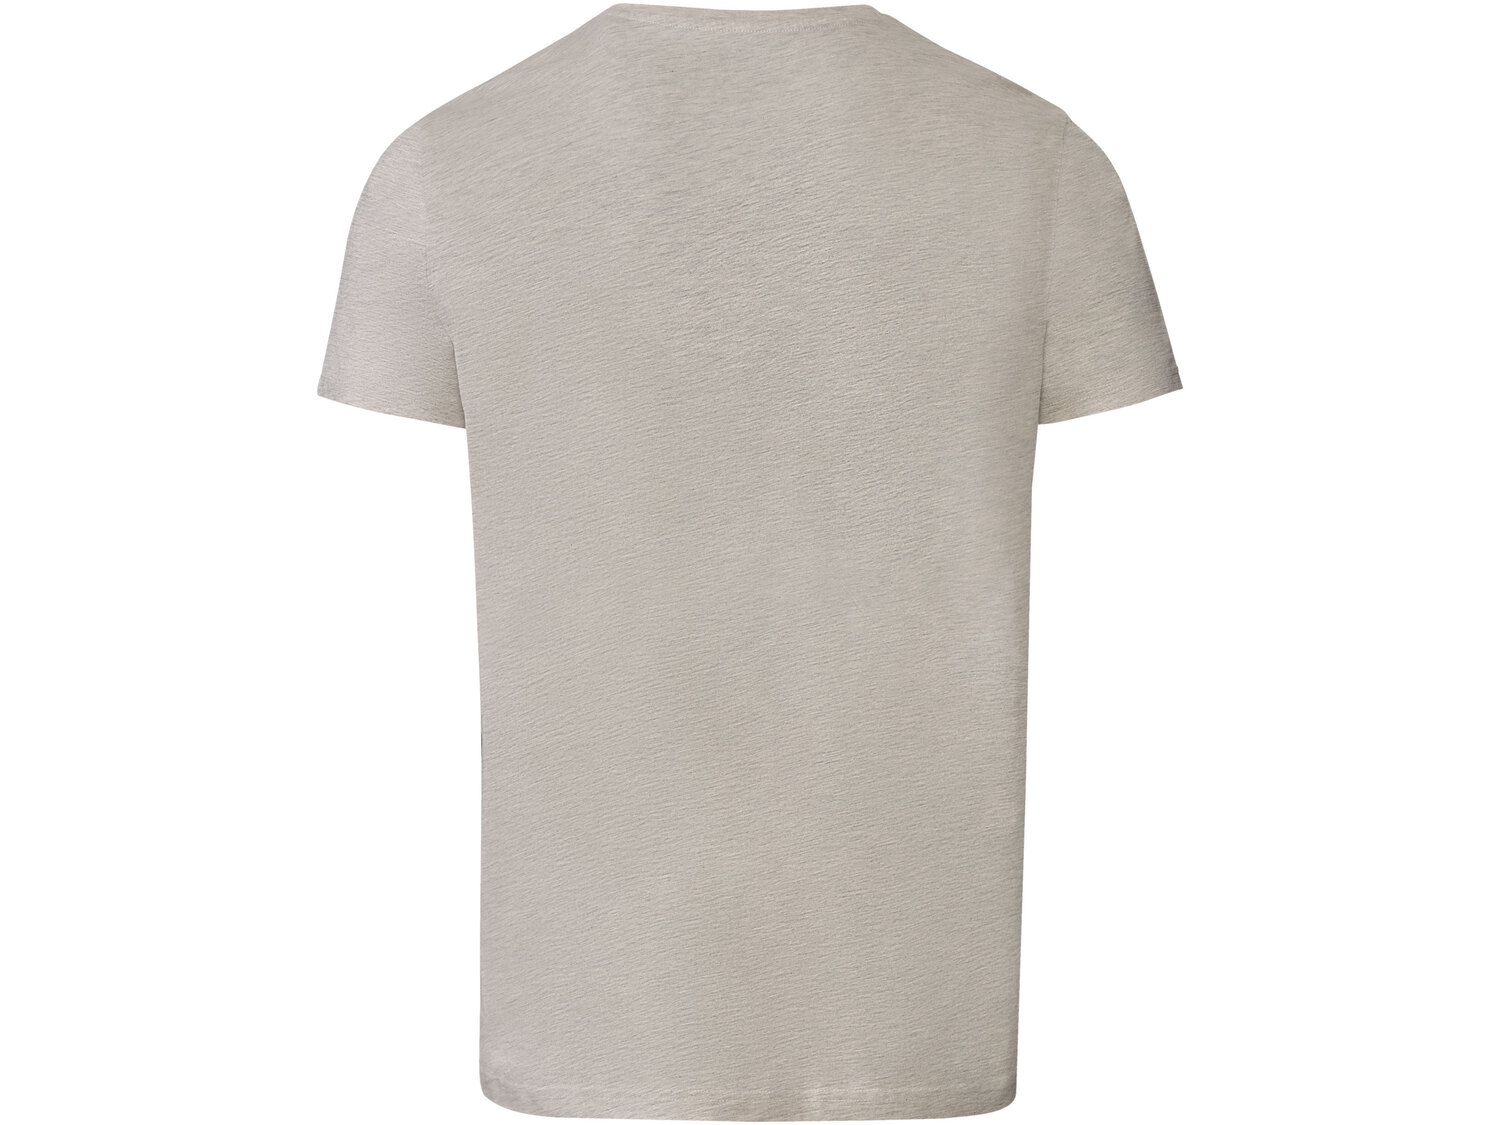 T-shirt męski z bawełny , cena 19,99 PLN 
- 98% bawełny, 2% wiskozy
- rozmiary: ...